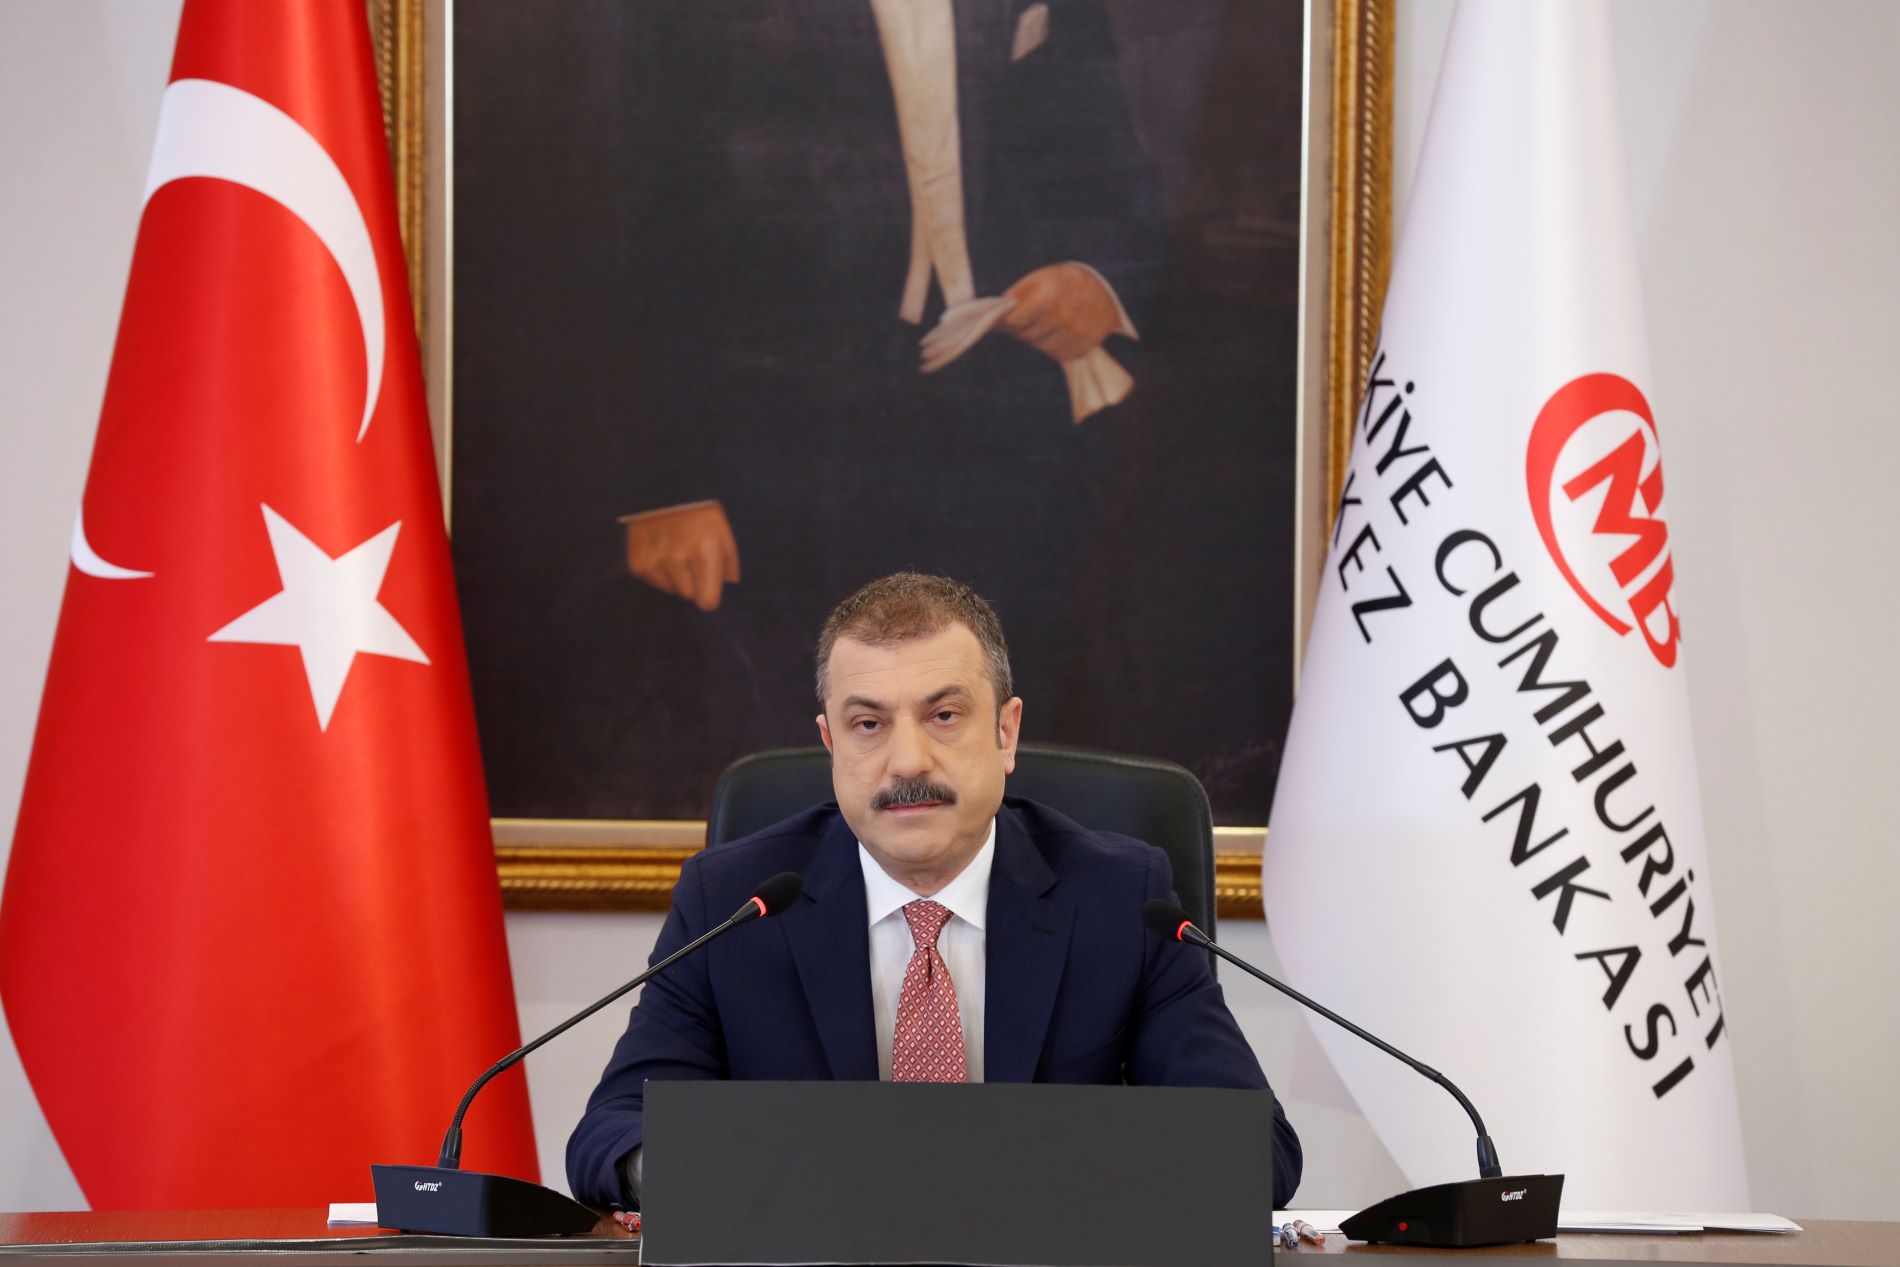 Ο διοικητής της κεντρικής τράπεζας της Τουρκίας Σαχάπ Καβτζιόγλου ©EPA/TURKISH CENTRAL BANK